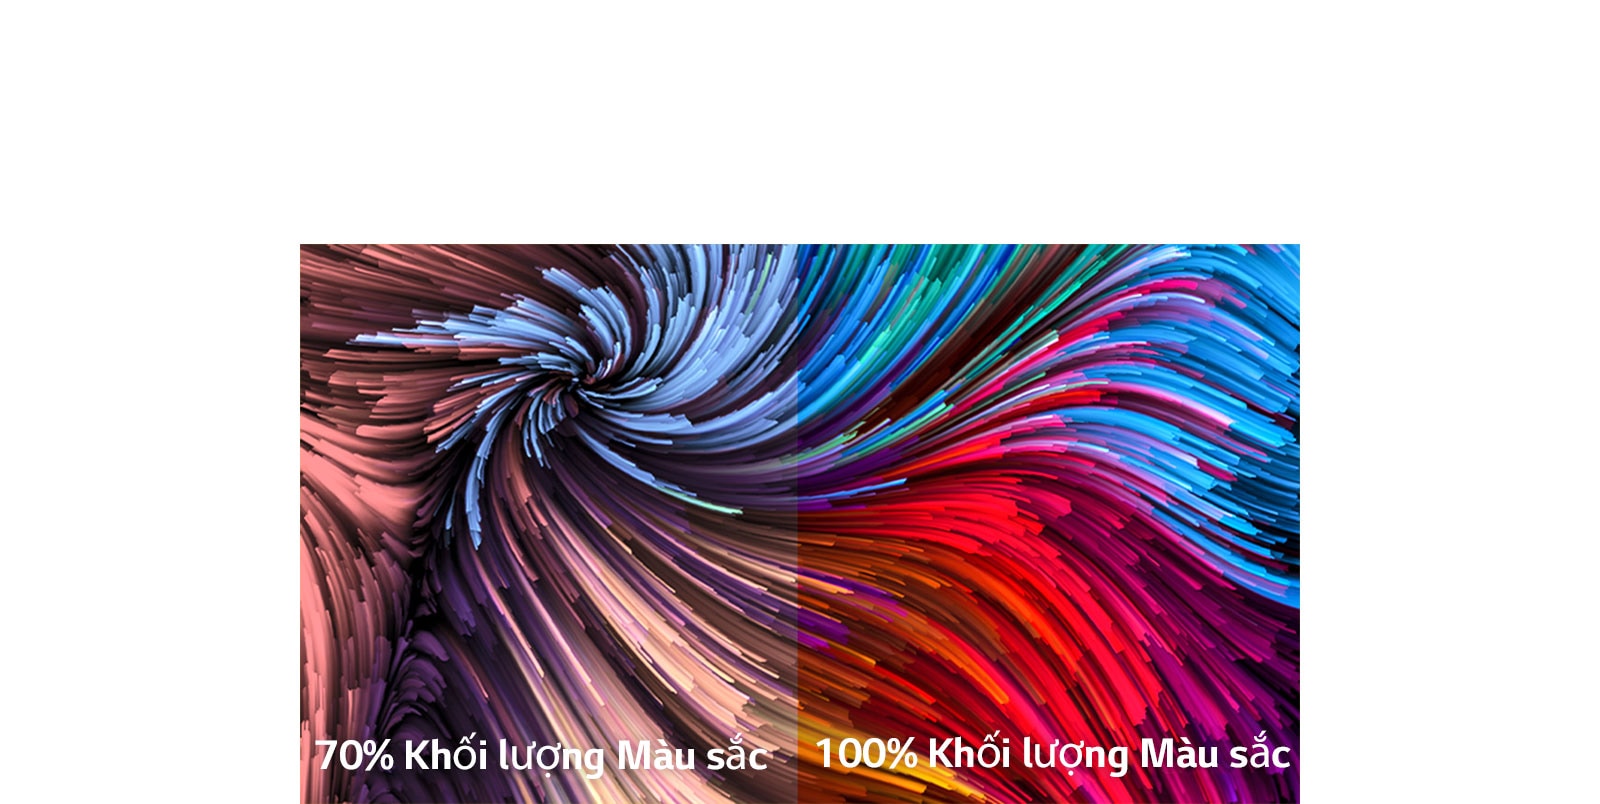 Hình ảnh sơn kỹ thuật số rất nhiều màu sắc được chia thành hai khu vực - bên trái là hình ảnh kém sống động hơn và bên phải là hình ảnh sống động hơn. Ở phía dưới bên trái có dòng chữ khối lượng màu 70% và bên phải là khối lượng màu 100%.